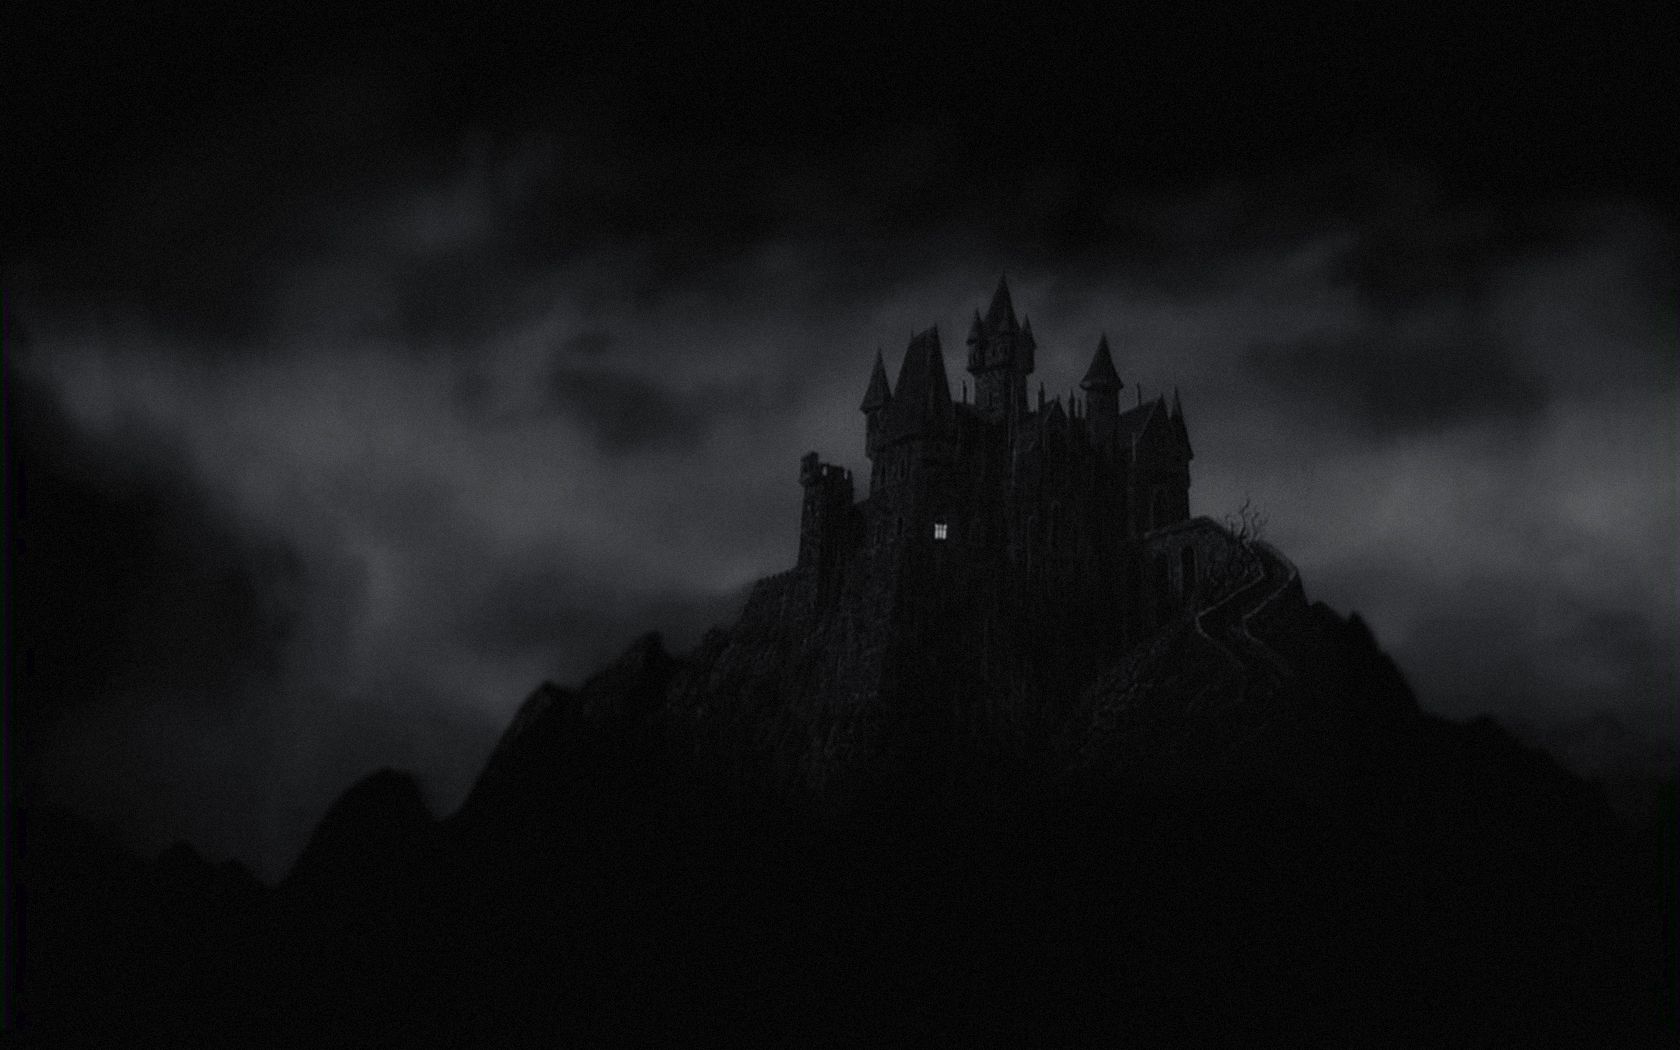 Castle Creepy Dark haunted sky clouds halloween buildings fantasy wallpaperx1050